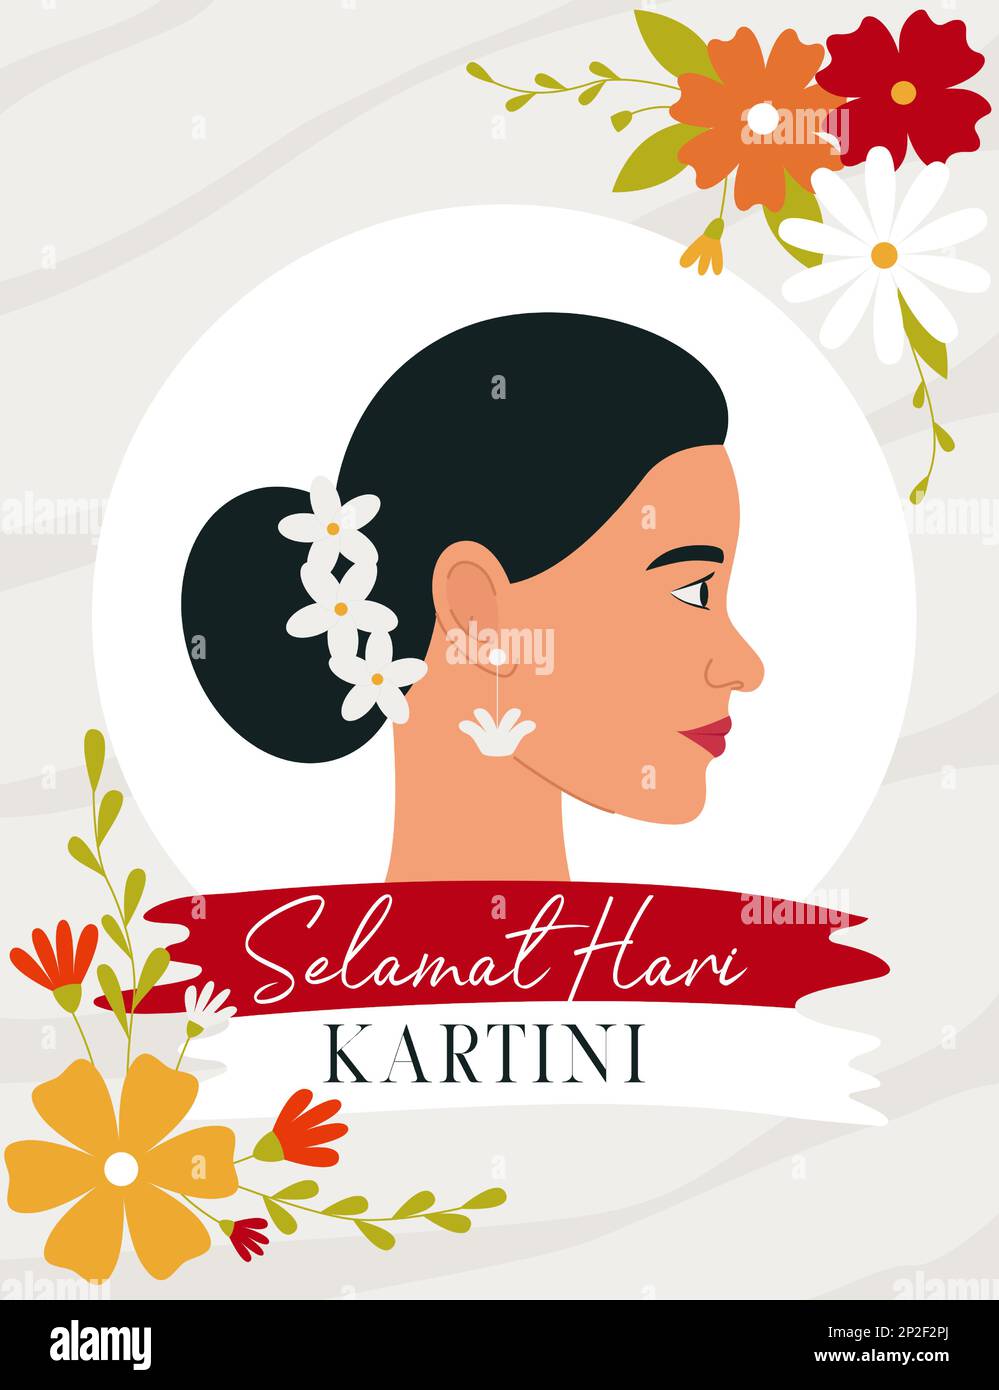 Selamat Hari Kartini Bedeutet Happy Kartini Day. Kartini ist eine indonesische Heldin. Profil einer dunkelhaarigen Frau, umgeben von Blumen. Flacher Vektor krank Stock Vektor